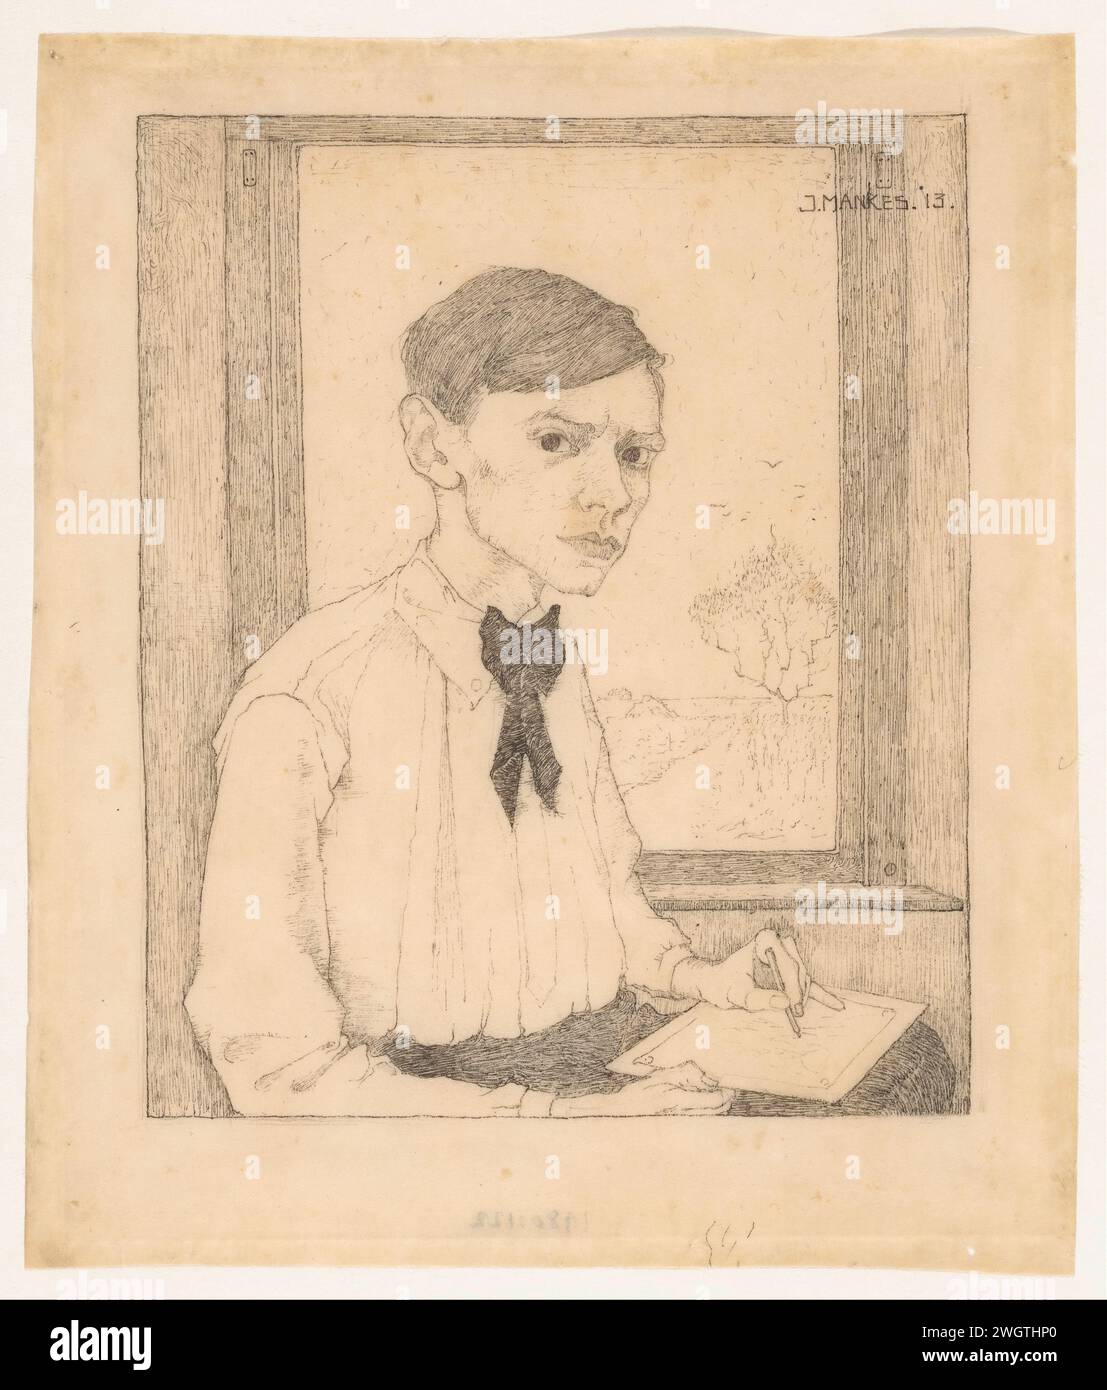 ZELFORTART, JAN Mankes, 1913 pergamena da disegno (materiale animale). ritratto a penna a inchiostro, autoritratto dell'artista. ritratto, autoritratto del disegnatore. persone storiche Foto Stock